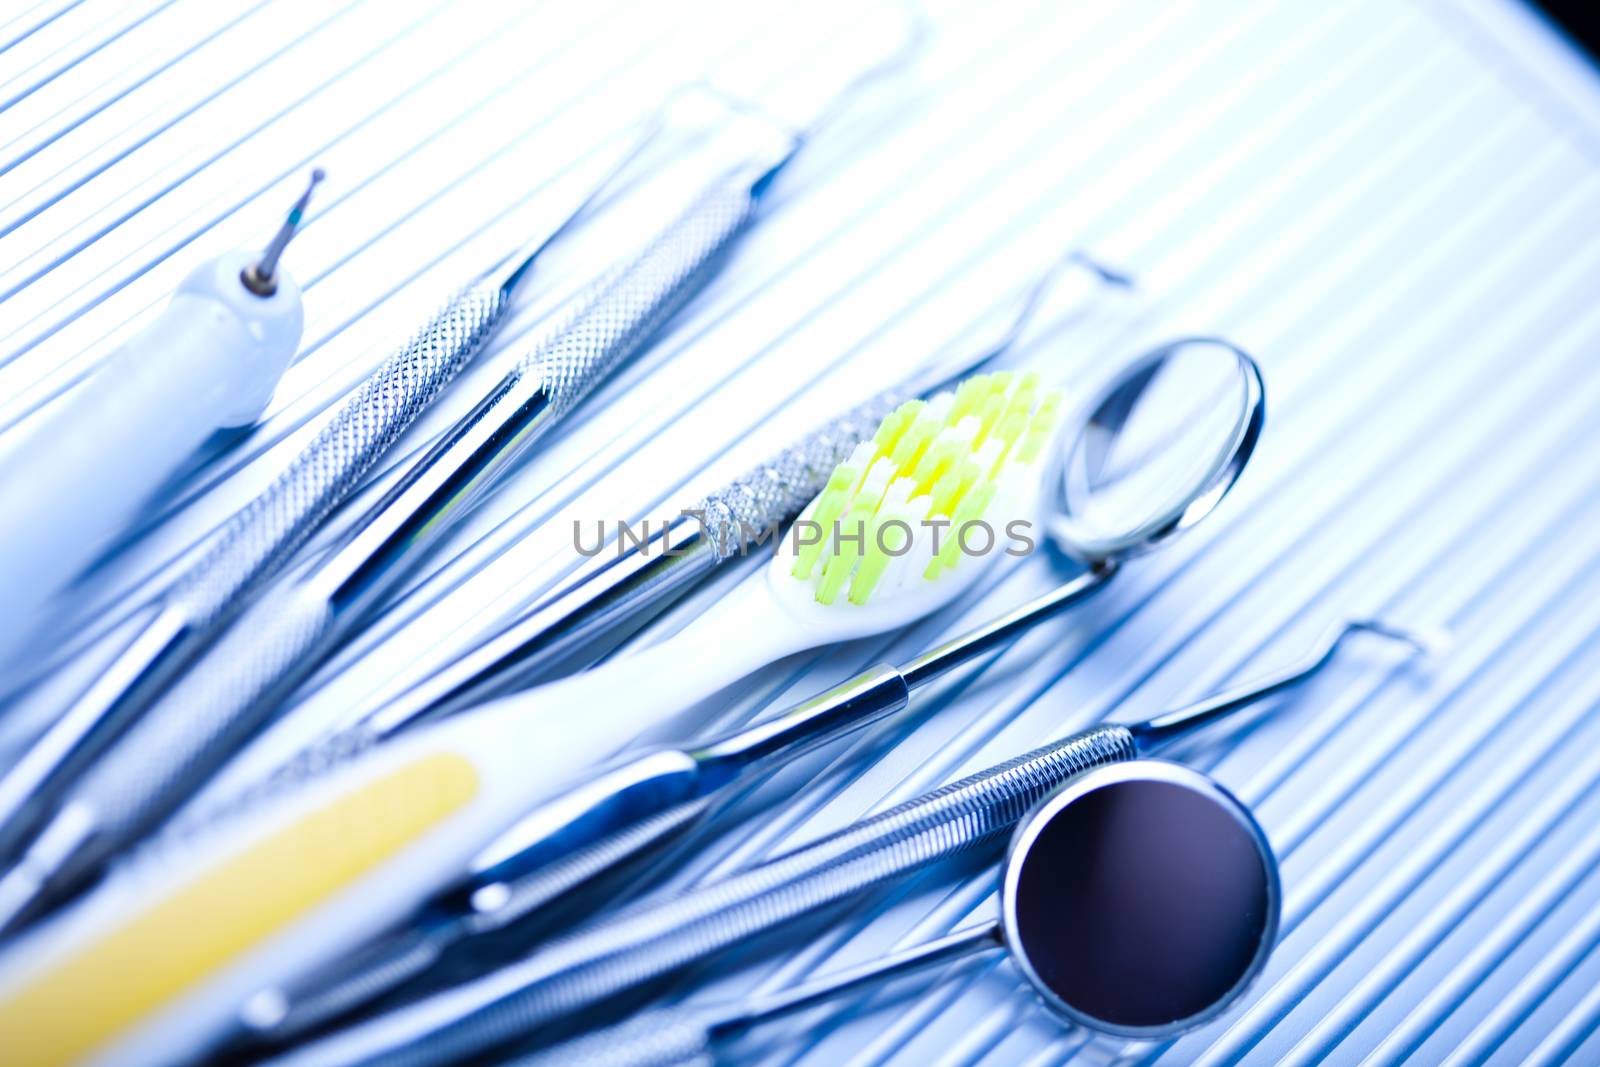 Dentist equipment on blue background by JanPietruszka